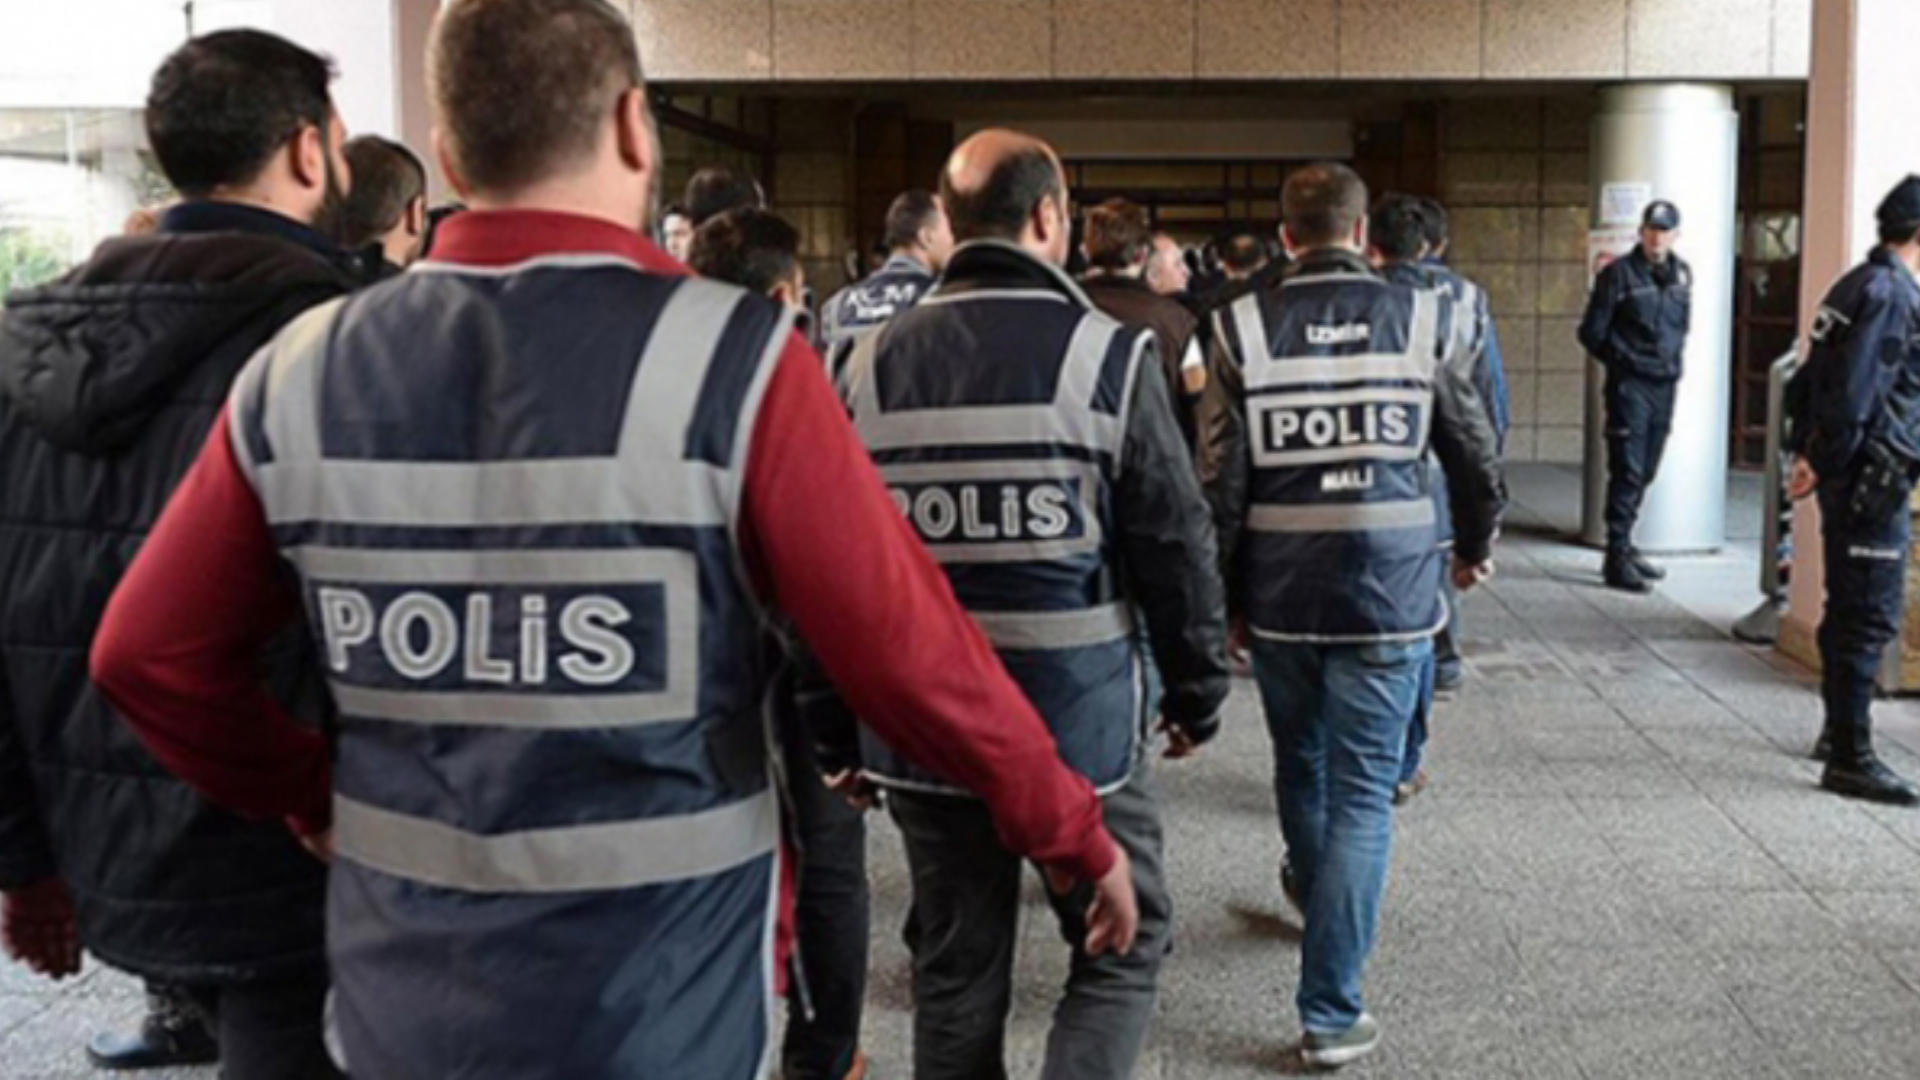 Adana'da tefeci operasyonu: 16 gözaltı